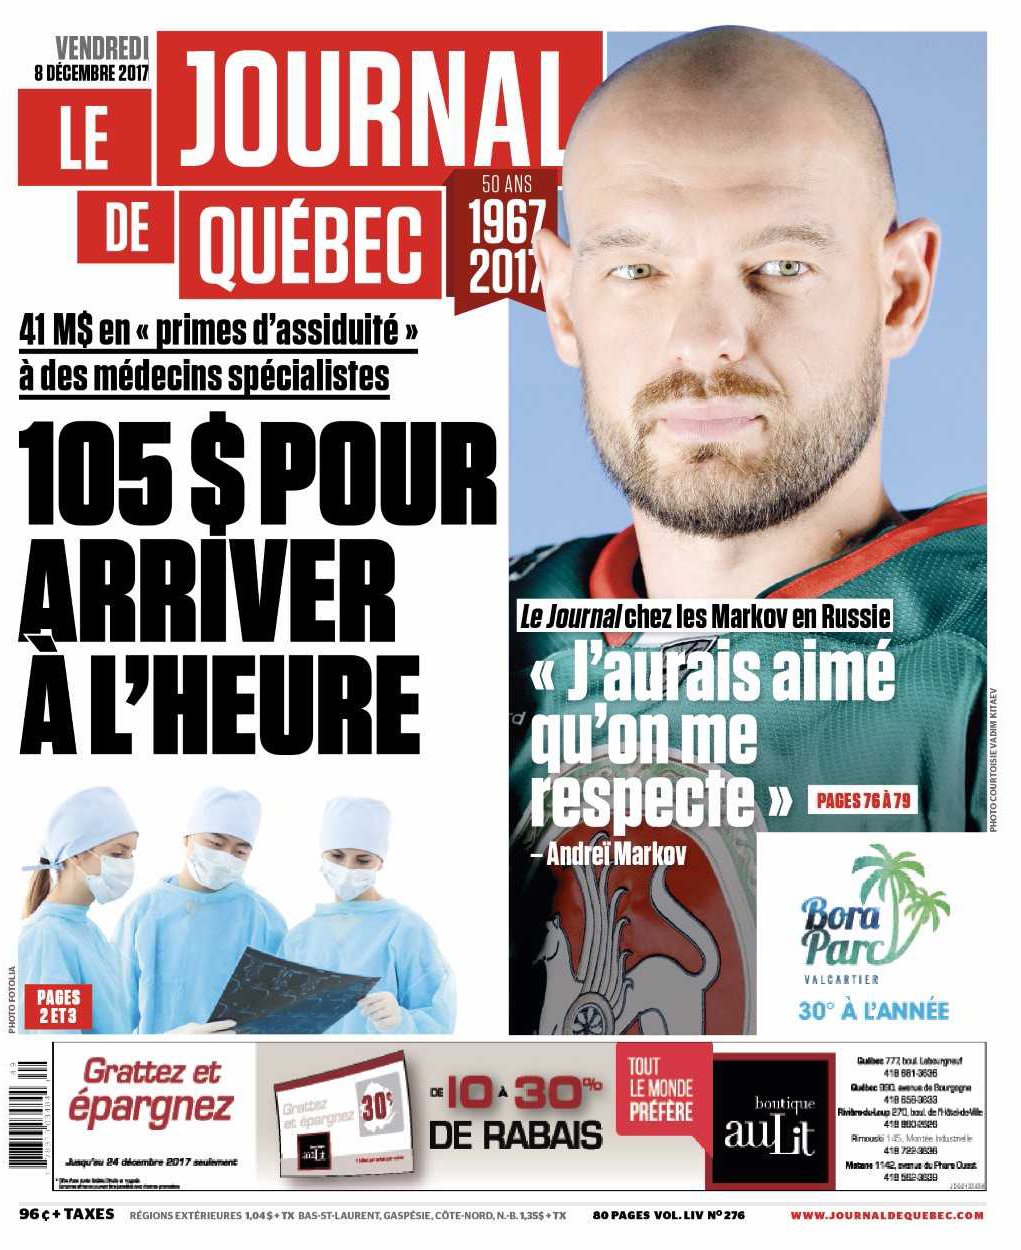 Le Journal de Québec on Twitter "La UNE de votre Journal